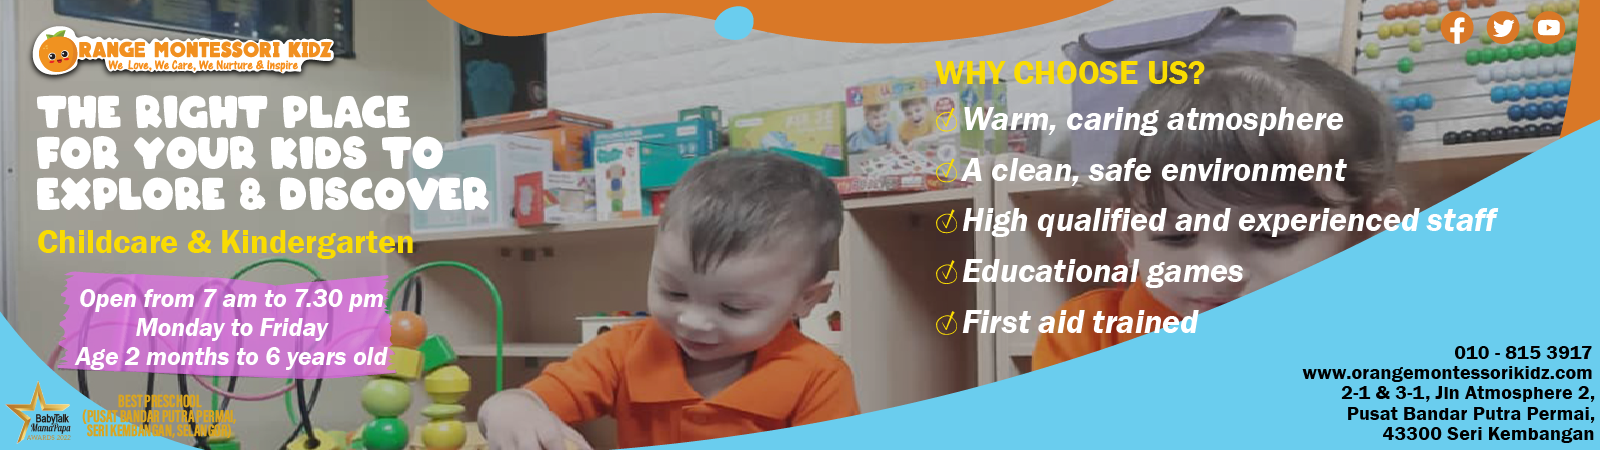 Best Montessori Education in Malaysia